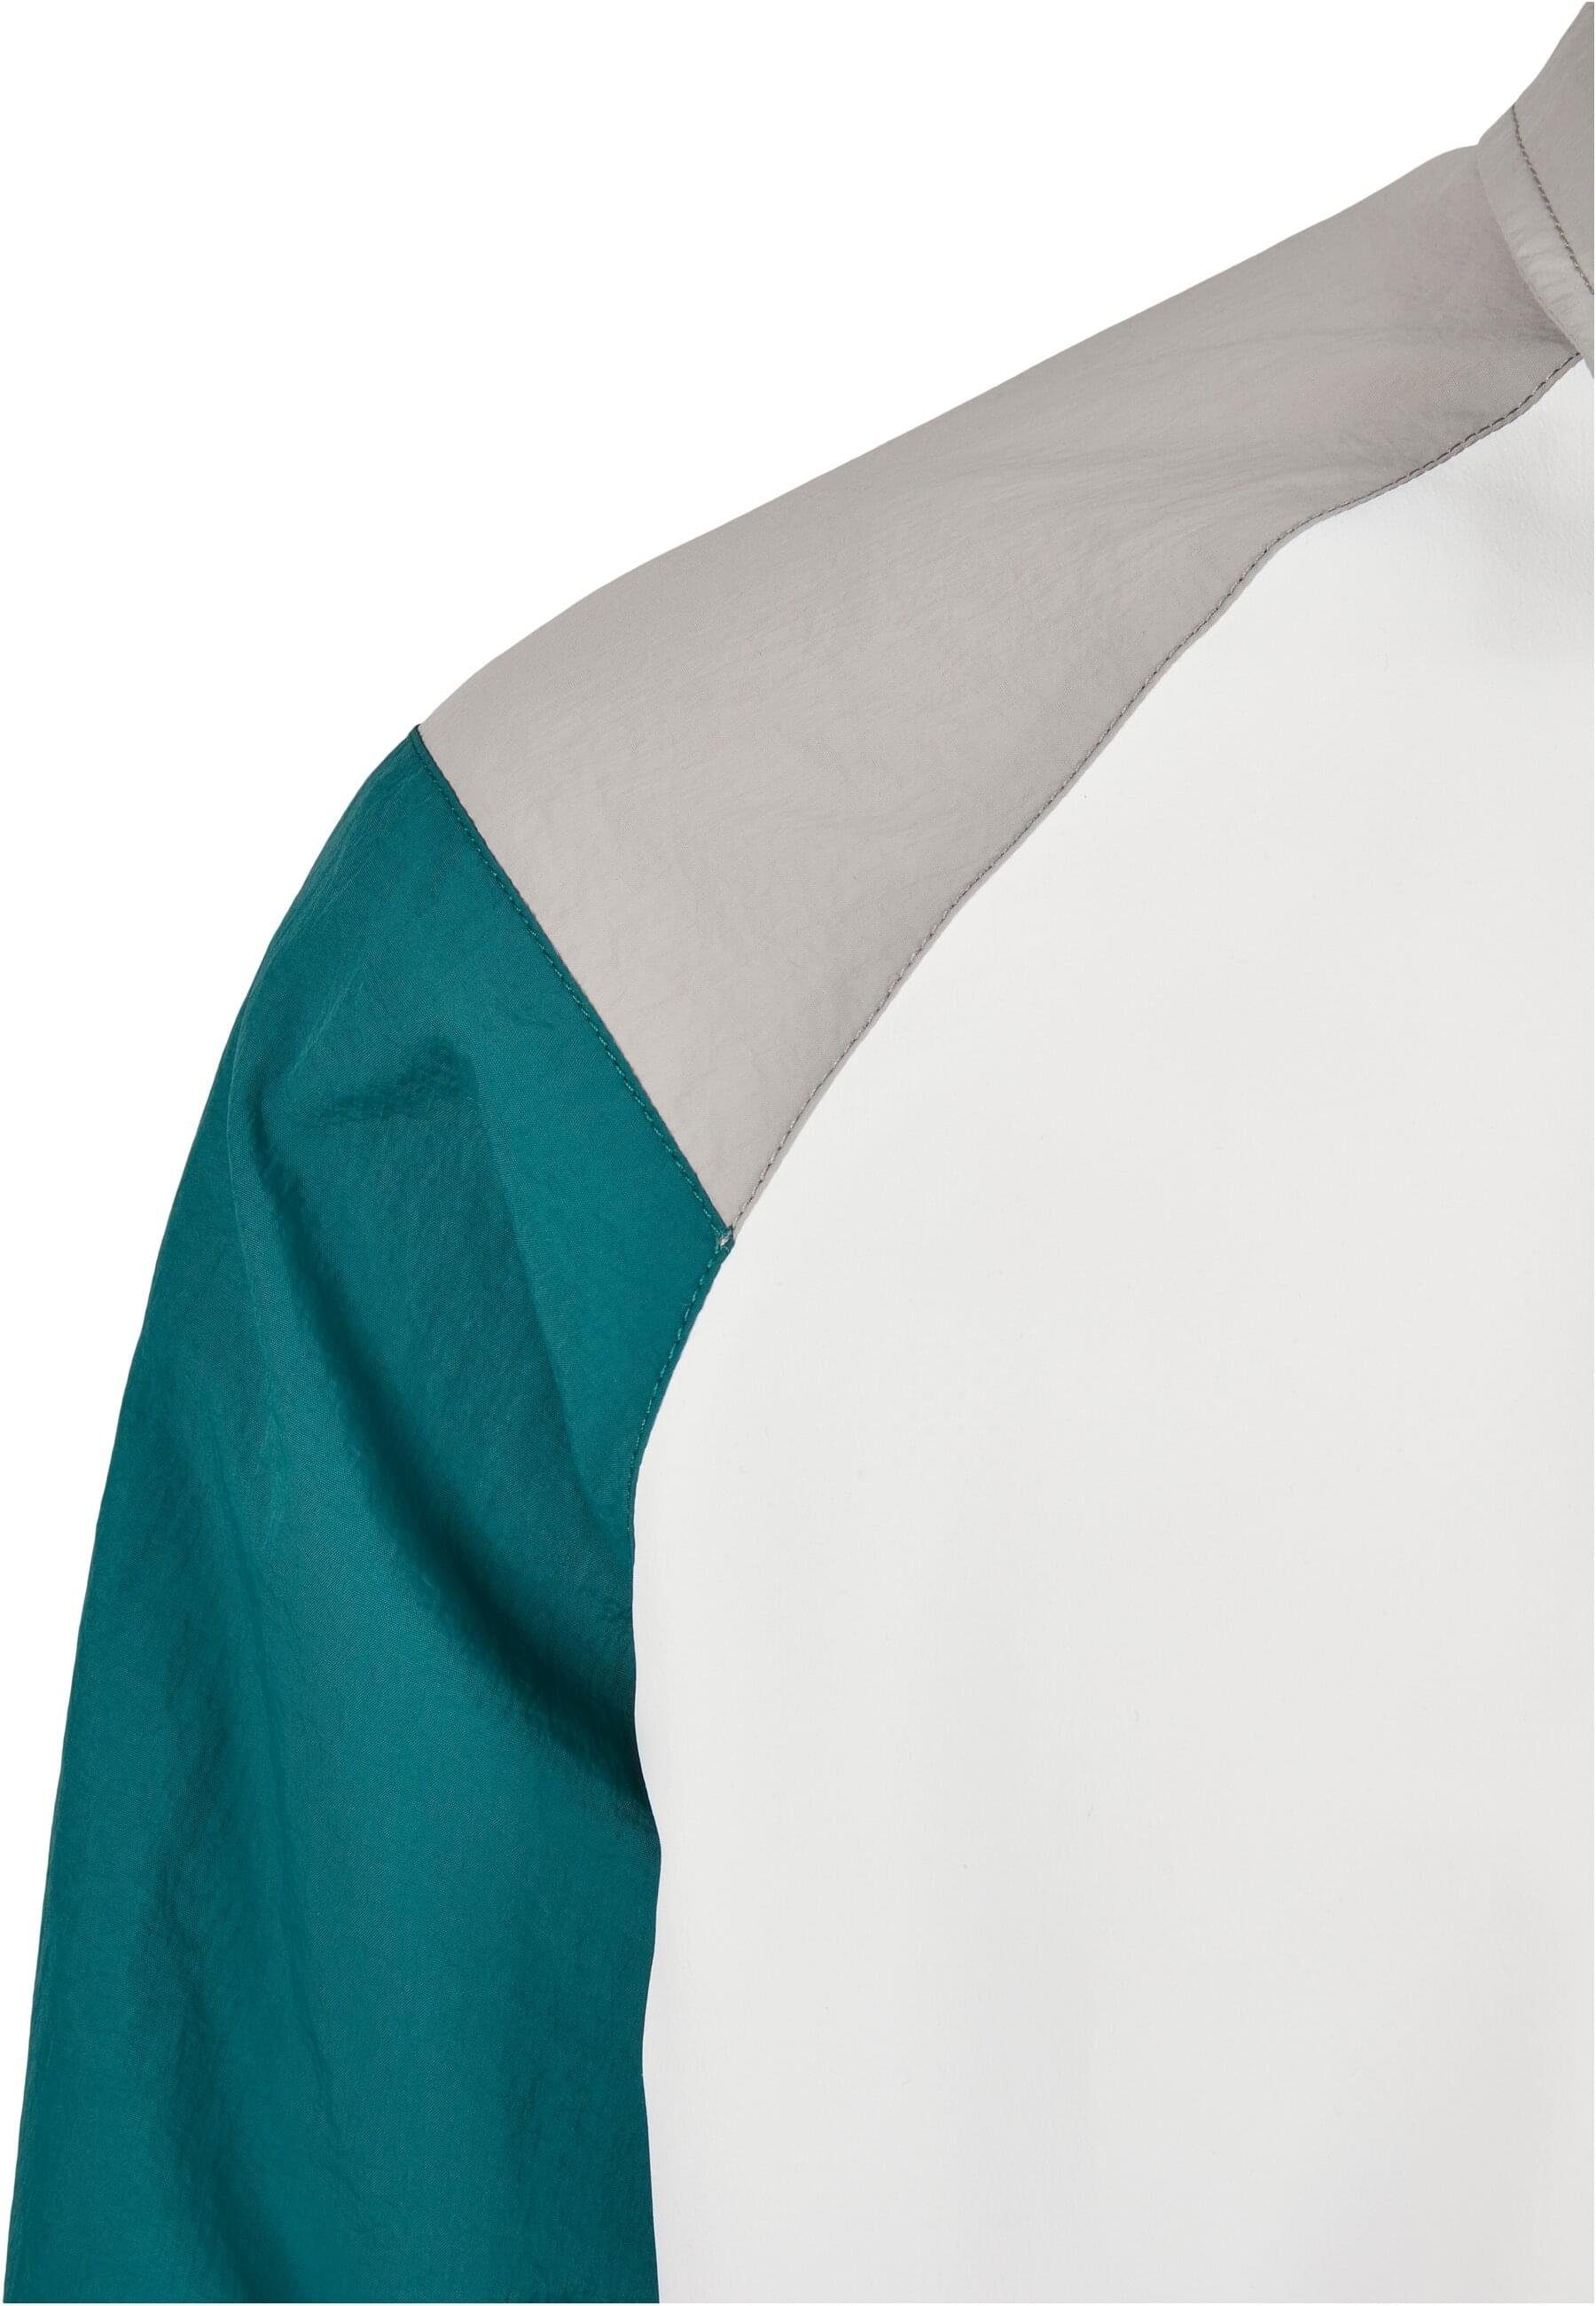 Blouson Starter retrogreen/white/green Jacket (1-St) Retro Block Herren Starter Color